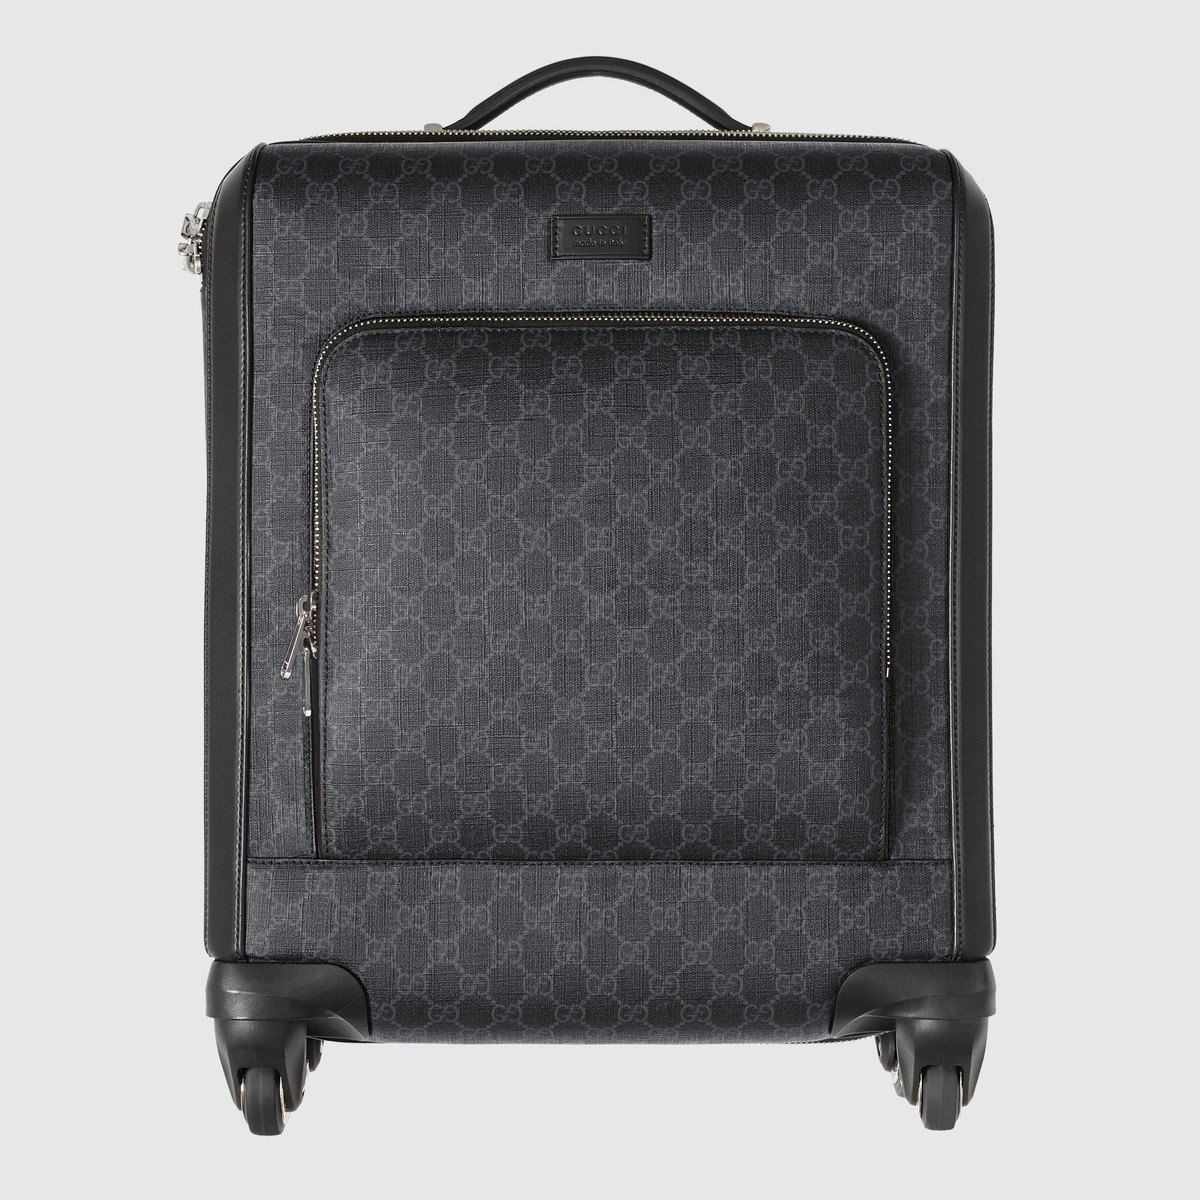 Gran Turismo GG Supreme suitcase - 5